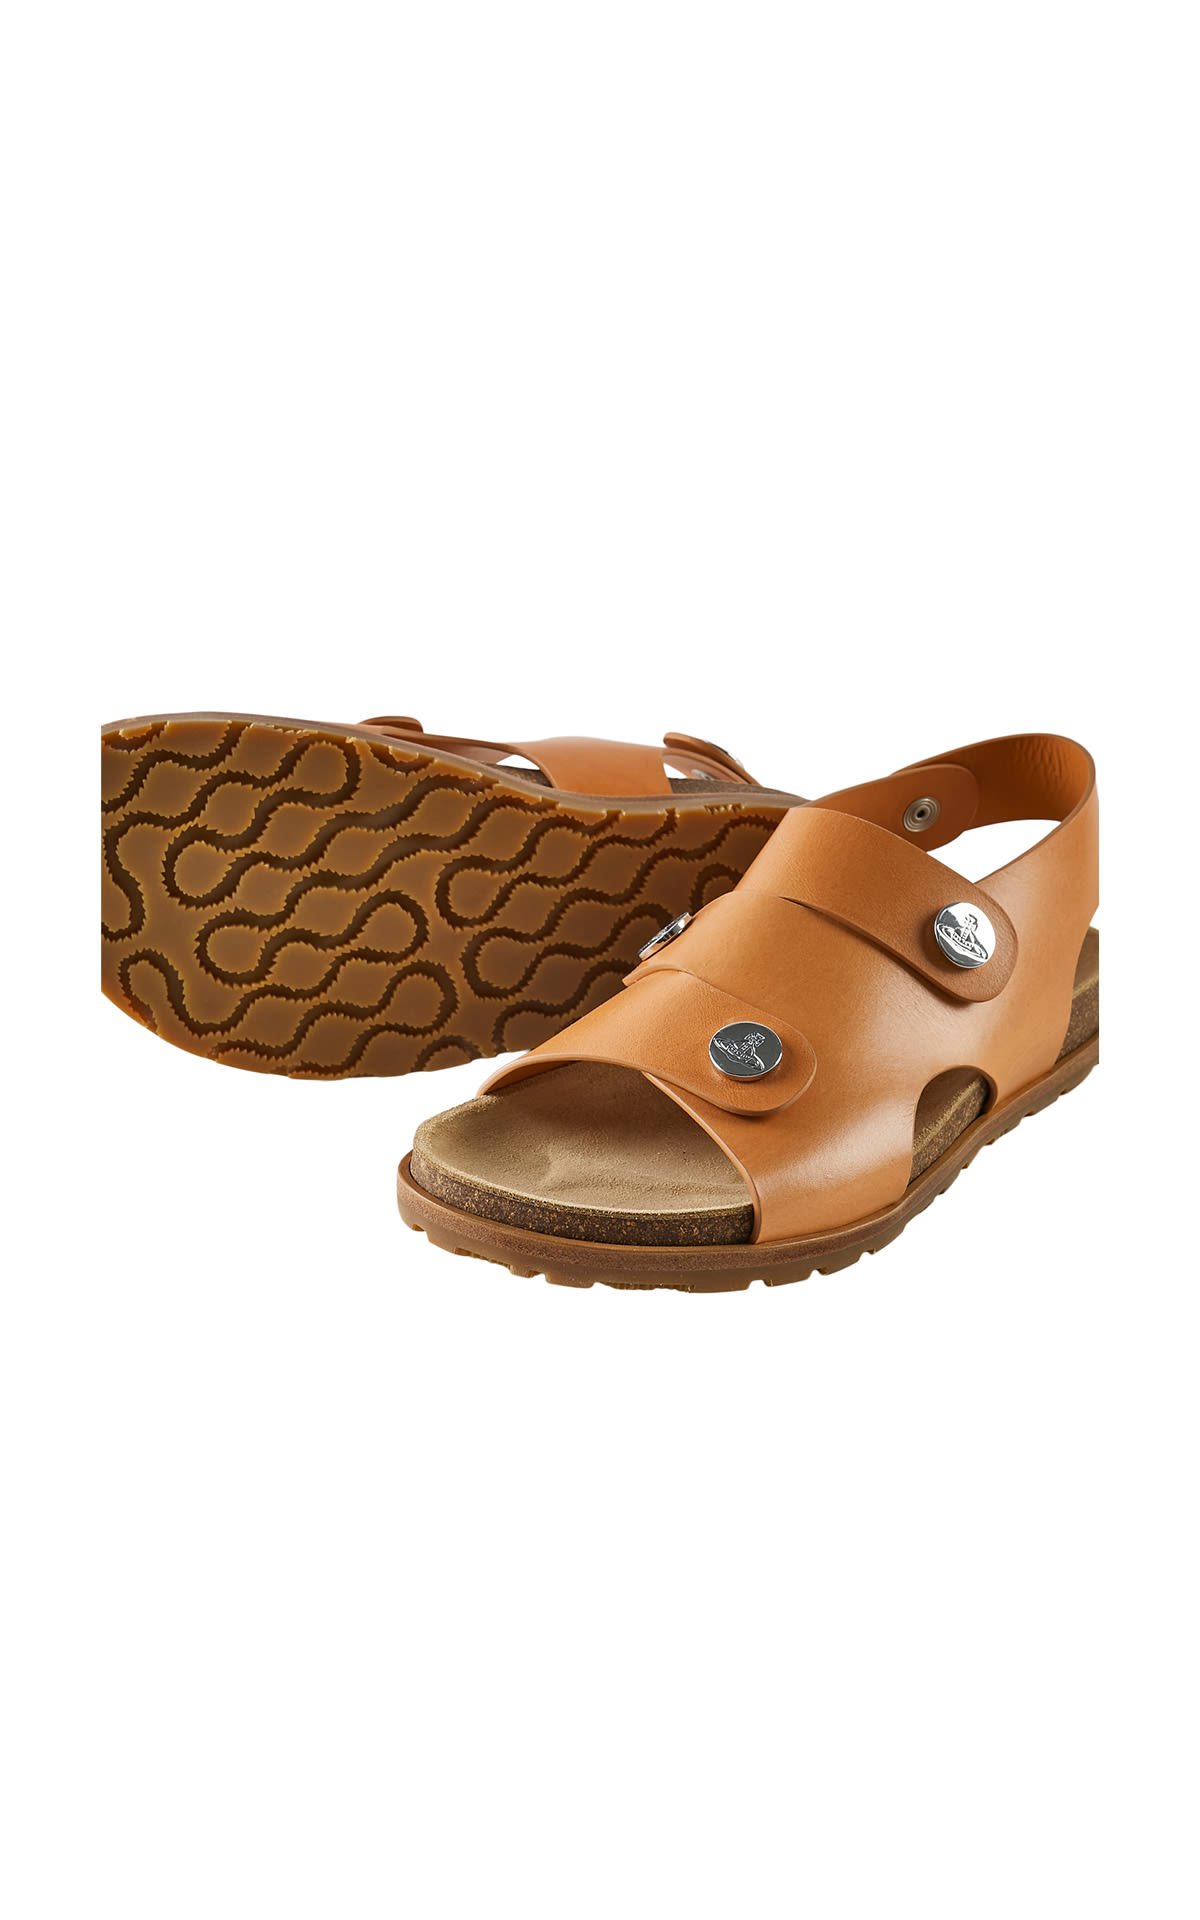 Brown sandals for men